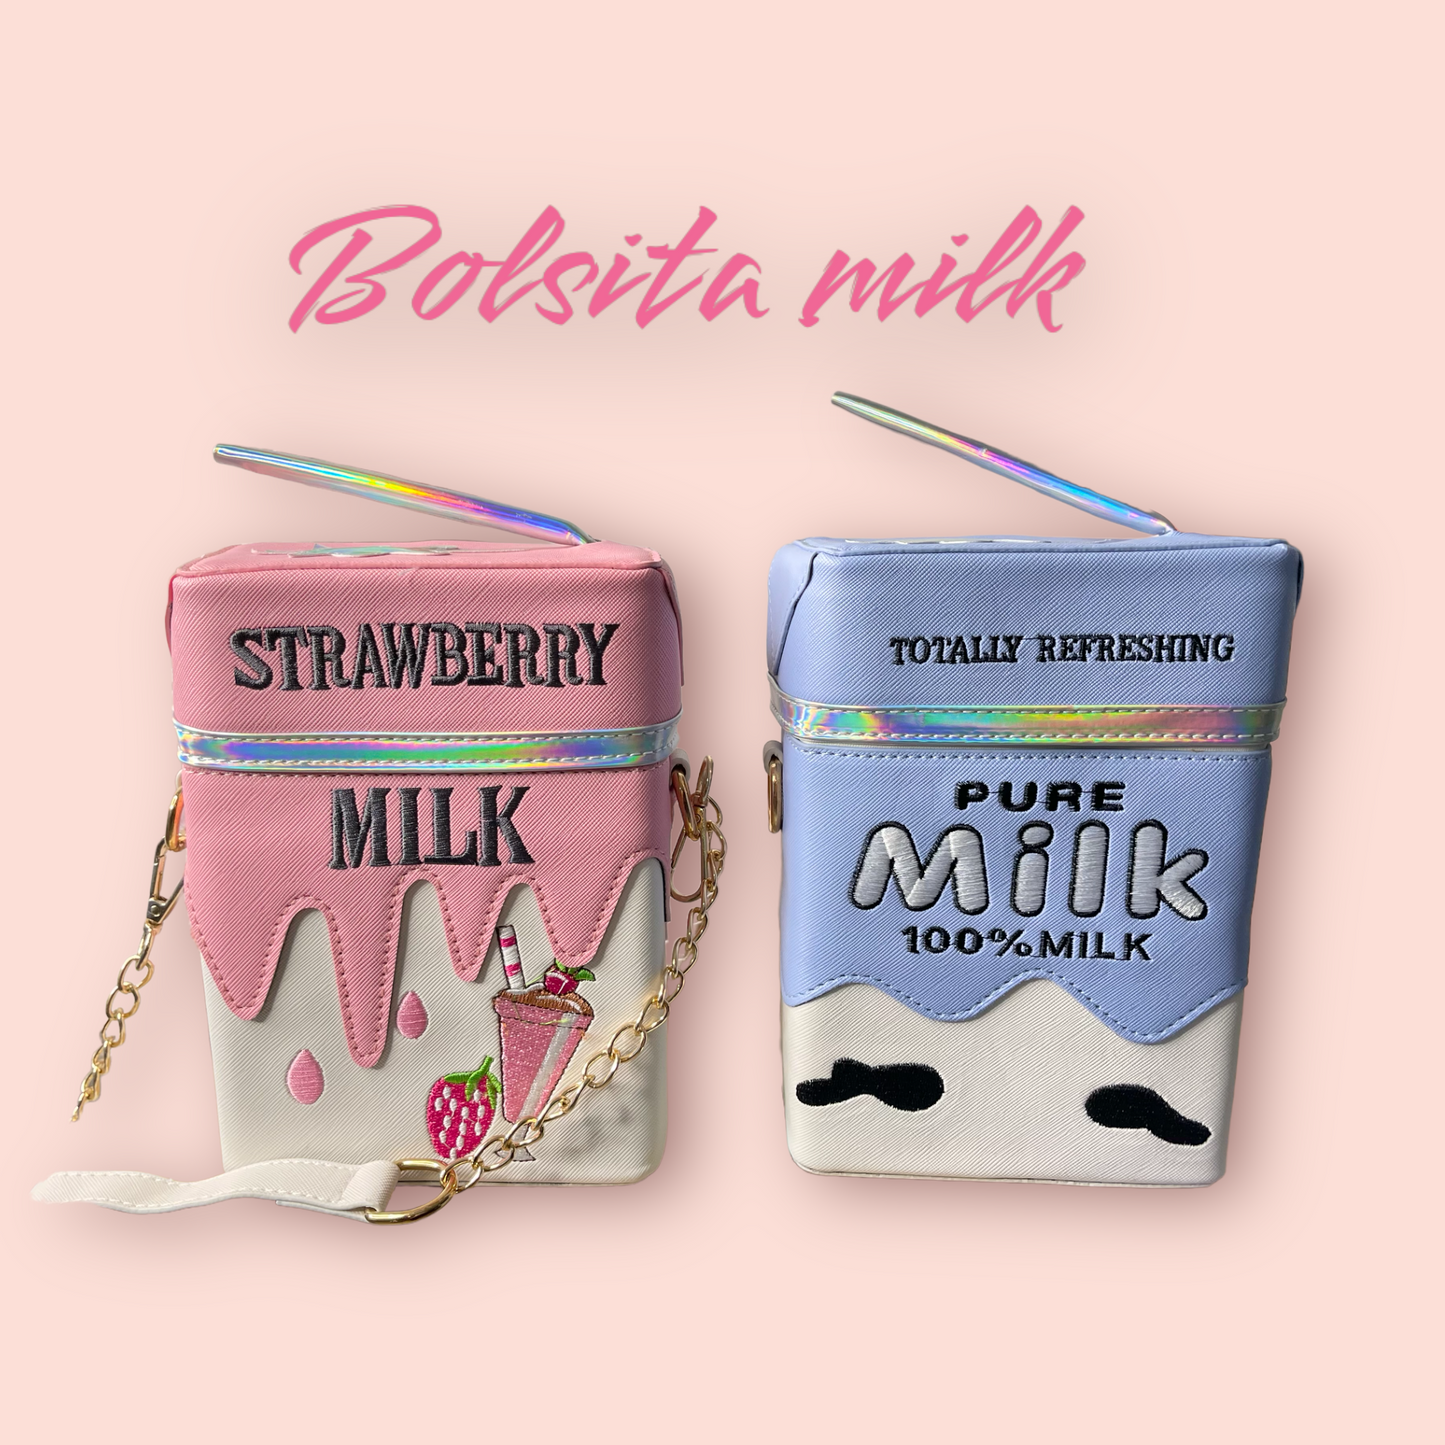 Bolsita milk / bolsa milk color al azar bolsa cartón de leche